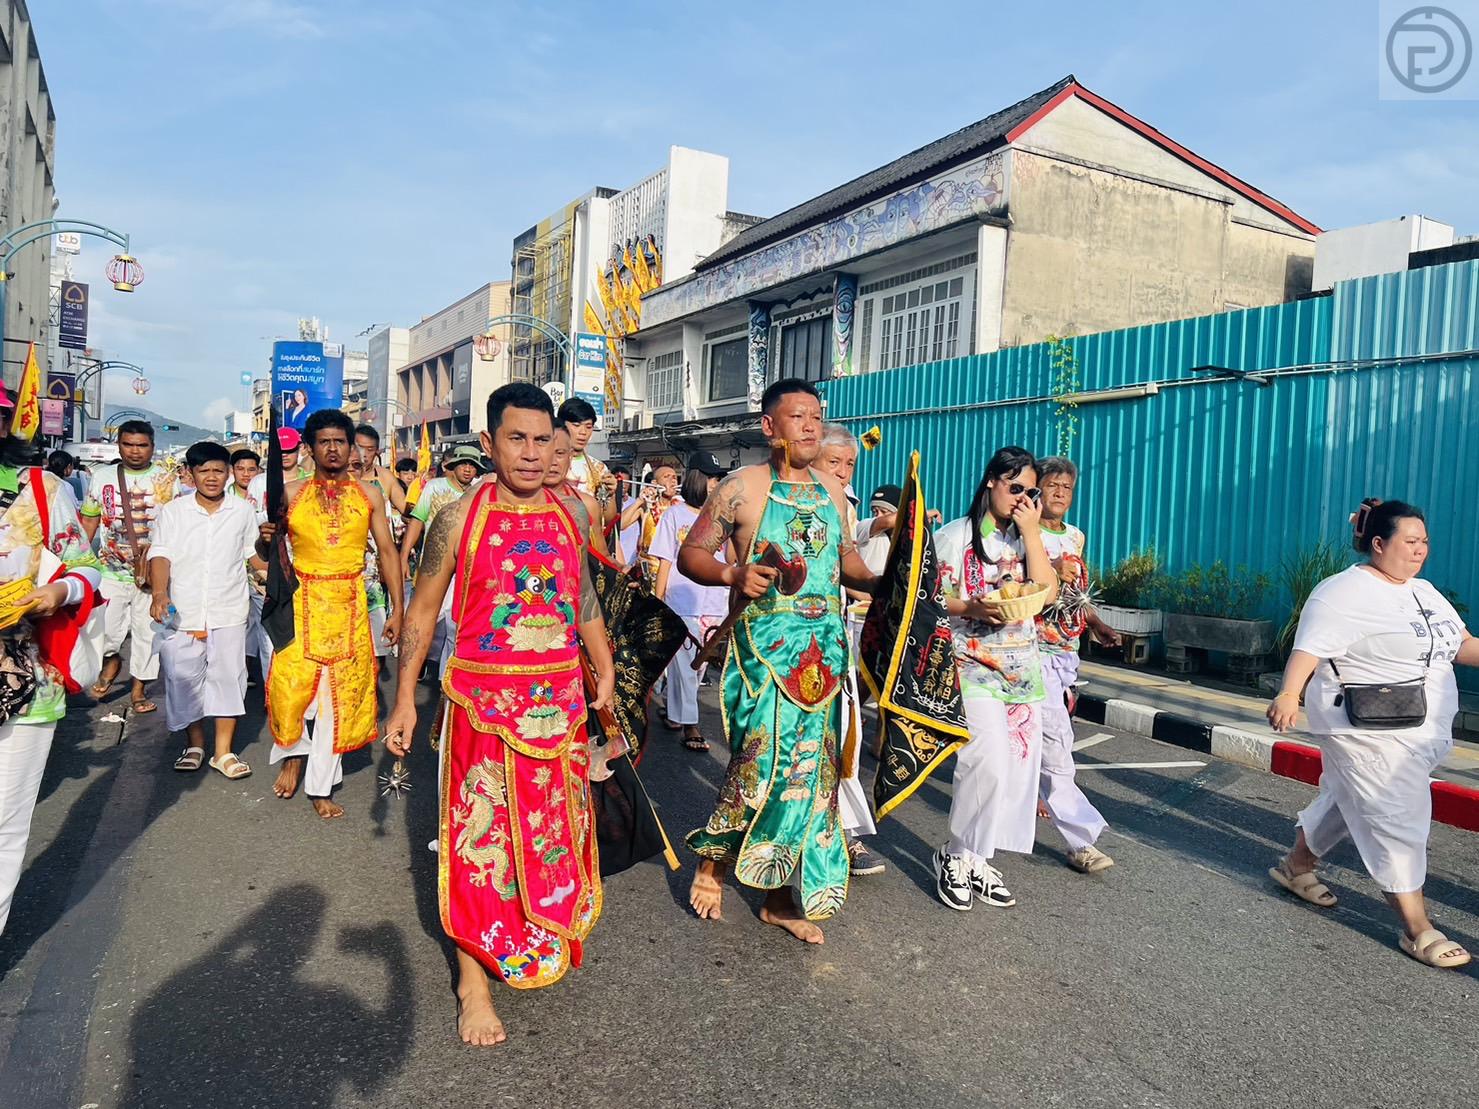 数以千计的当地居民和外国人参加周日普吉岛素食节的“Yu Keng”仪式 - The Phuket Express